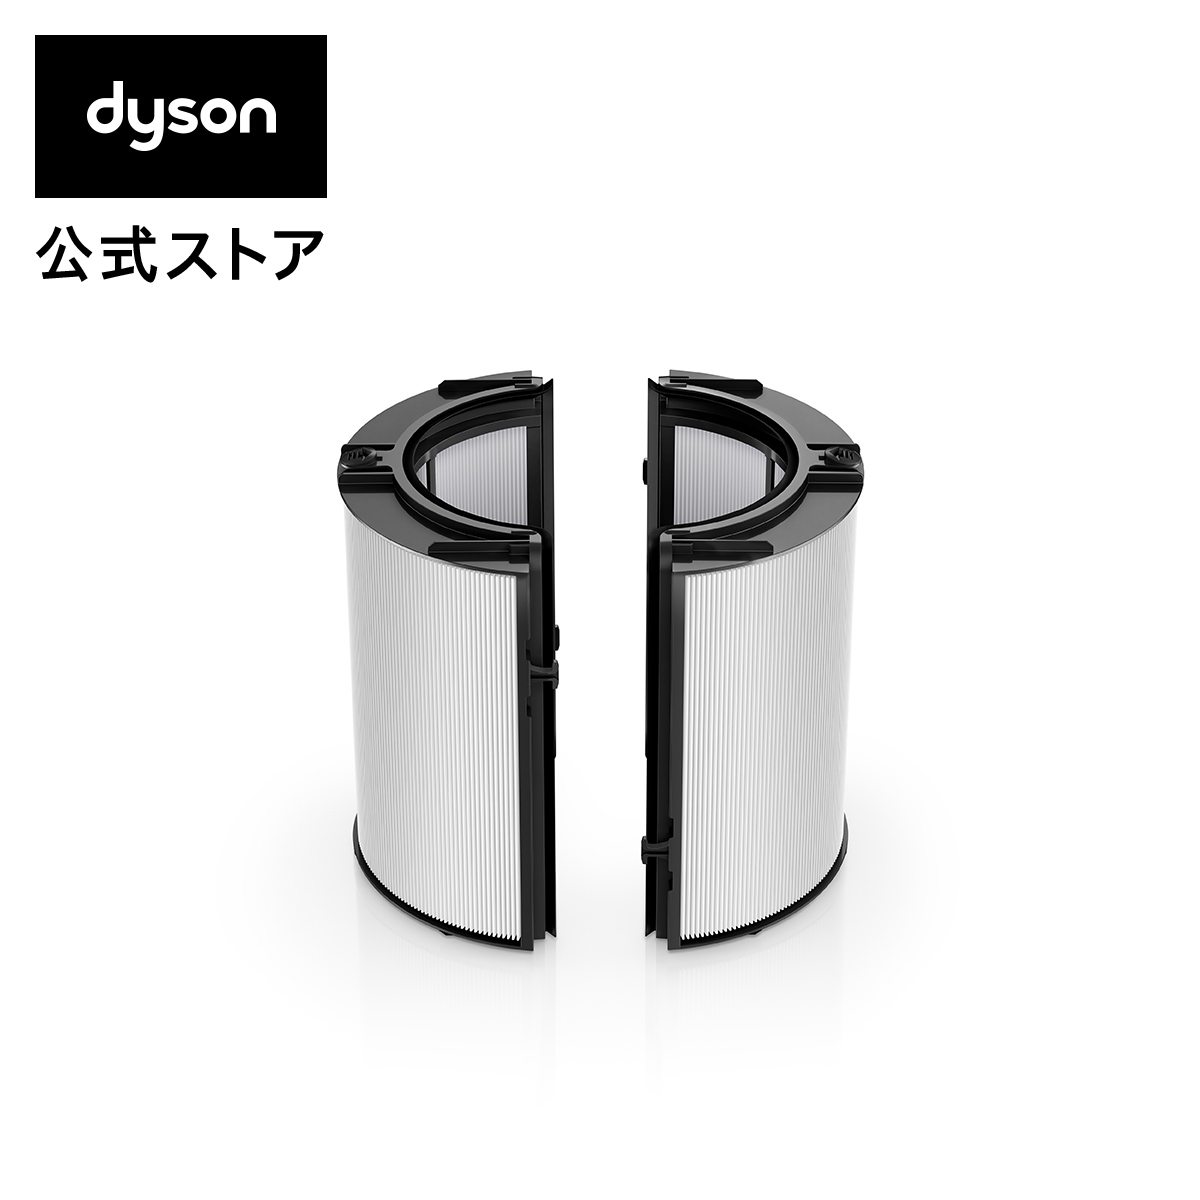 Dyson ダイソン 今だけスーパーセール限定 一体型リサイクルグラスHEPA い出のひと時に、とびきりのおしゃれを！ 活性炭フィルター 交換用フィルター PH04 PH03 DP04 TP04 HP04用 HP07 TP07 PH01